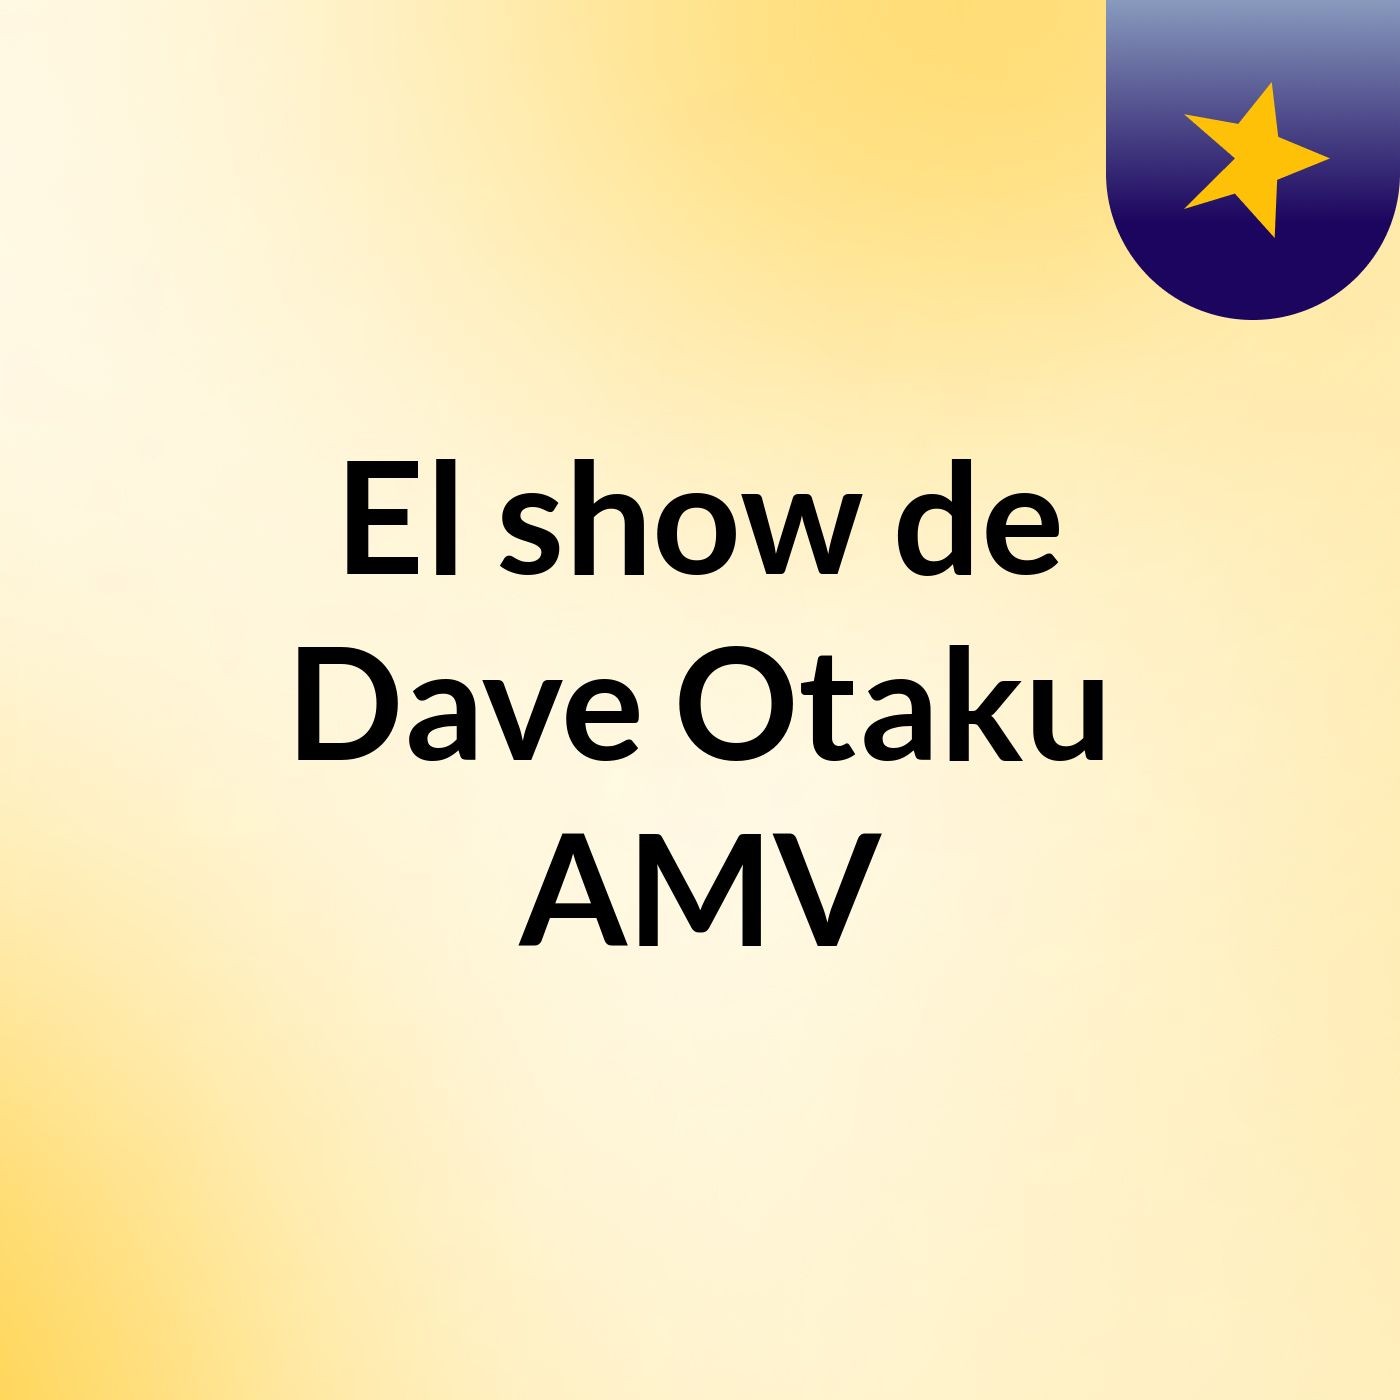 El show de Dave Otaku AMV